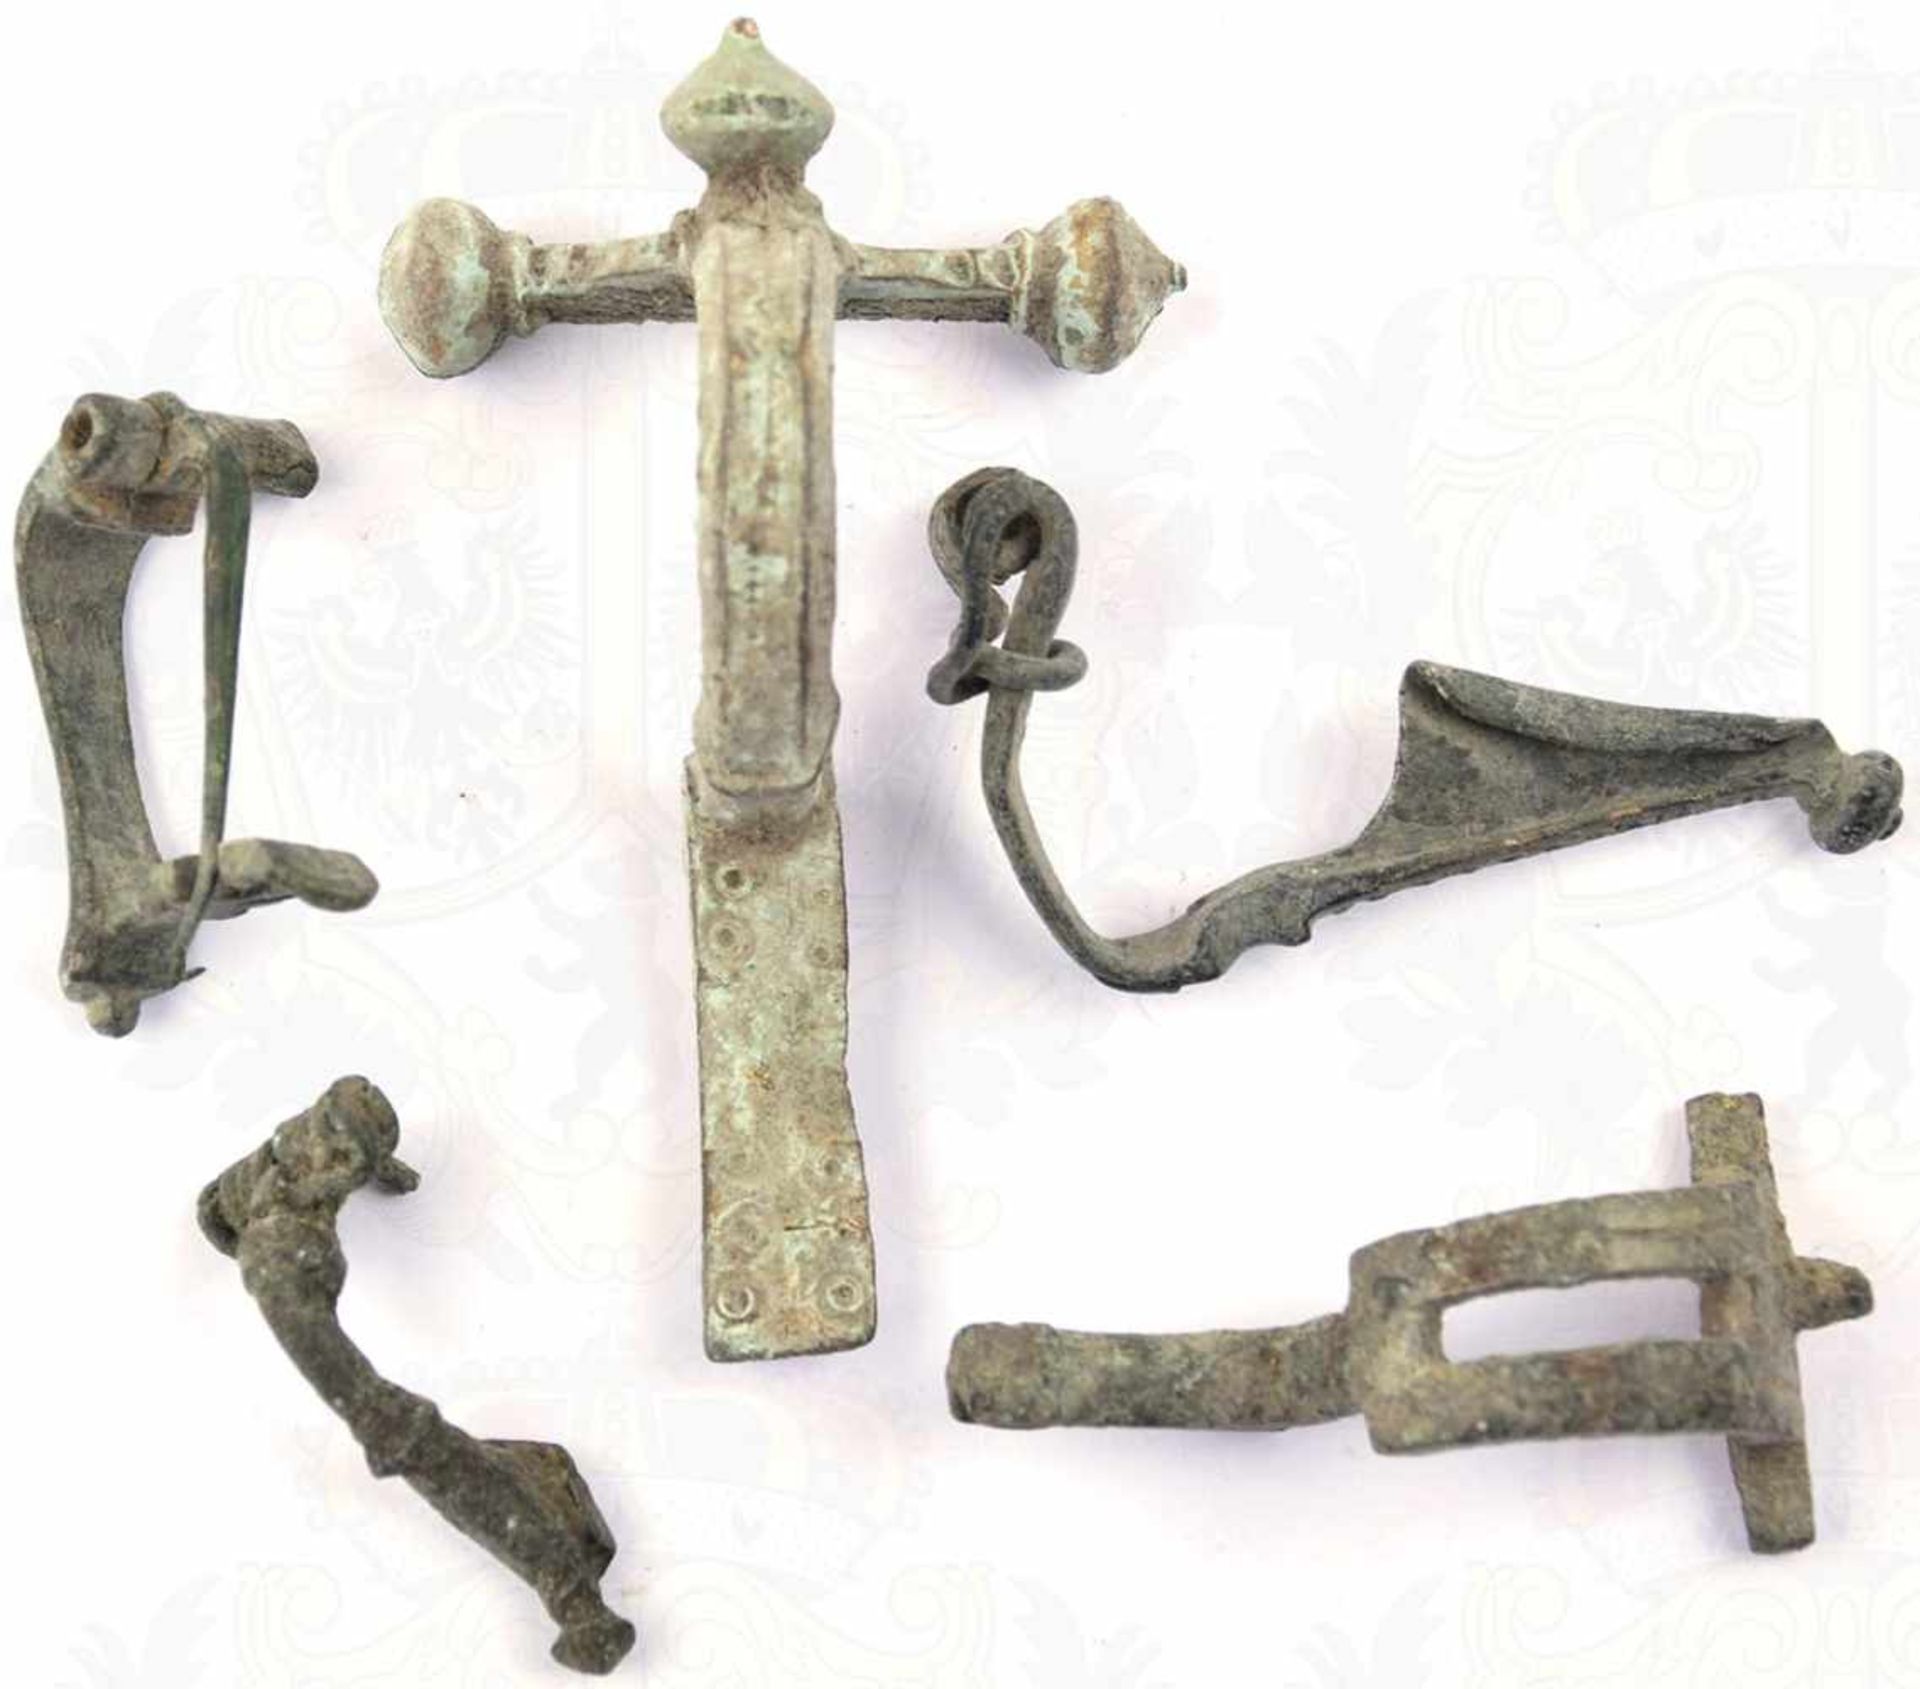 5 GEWANDFIBELN, römisch, gereinigte Bodenfunde, Bronze, alle mit Patina, 4 Nadeln fehlen, 1x